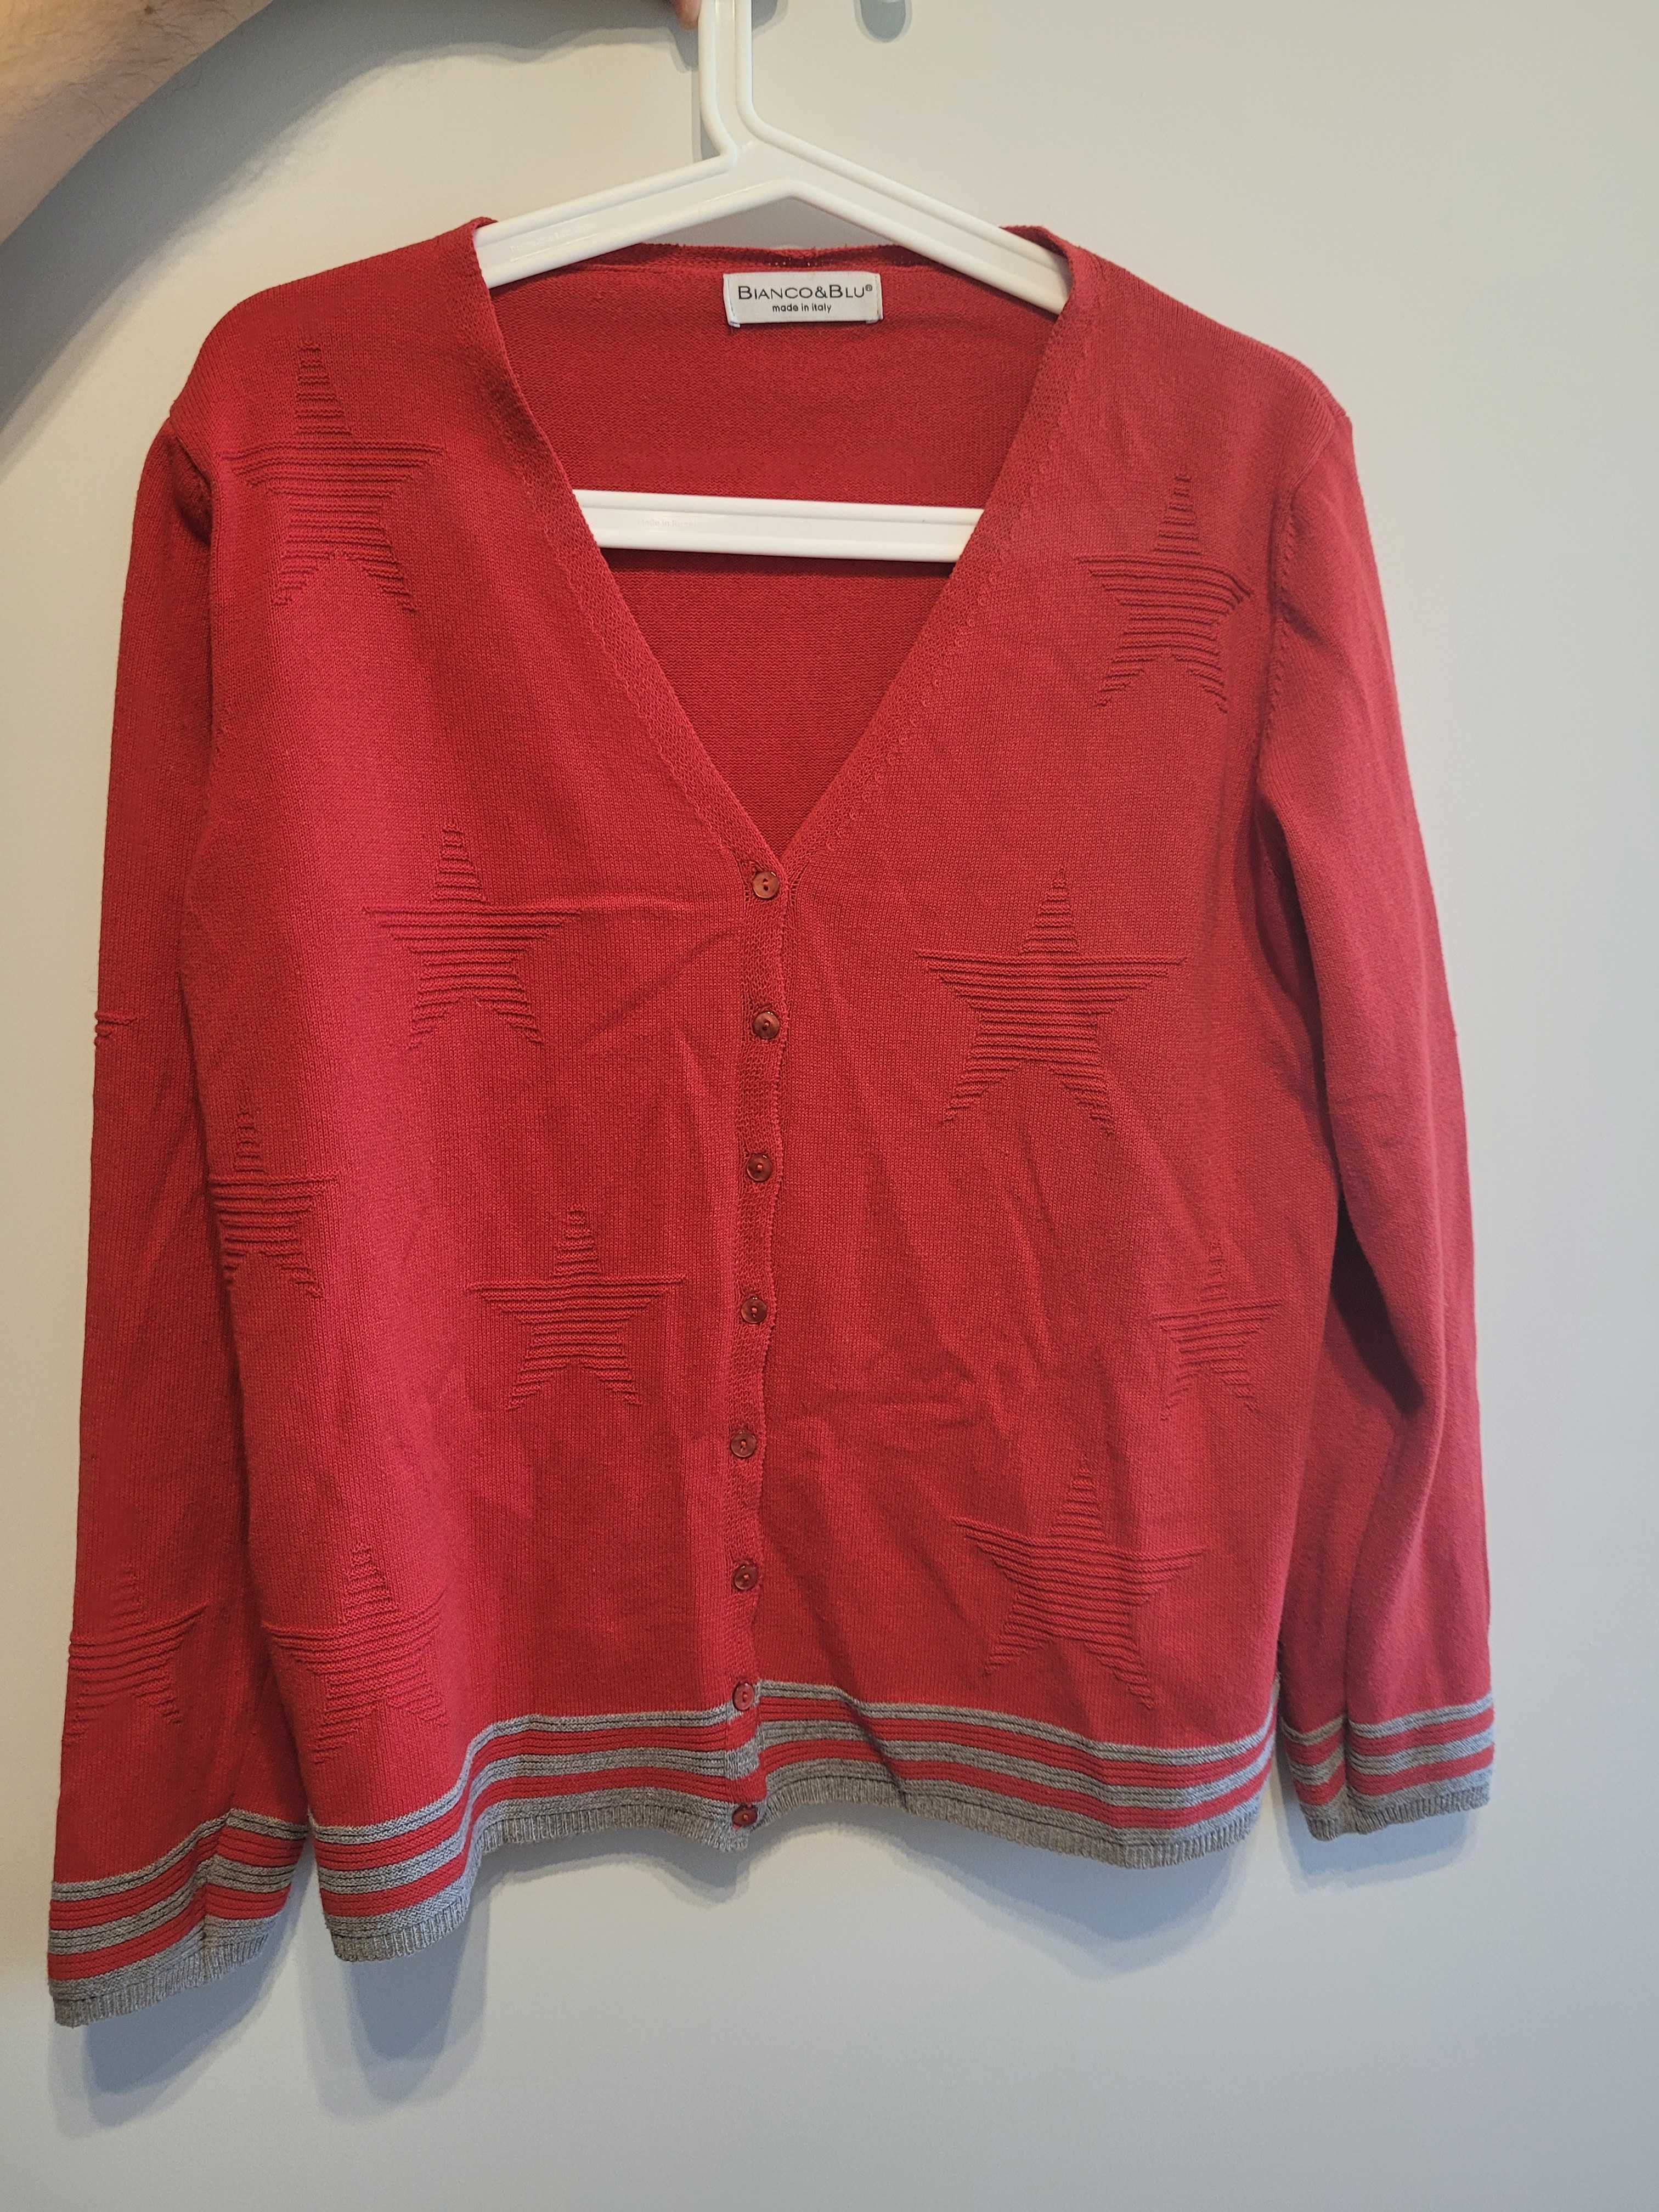 Wloski, czerwony sweterek Bianco&Blu r.M